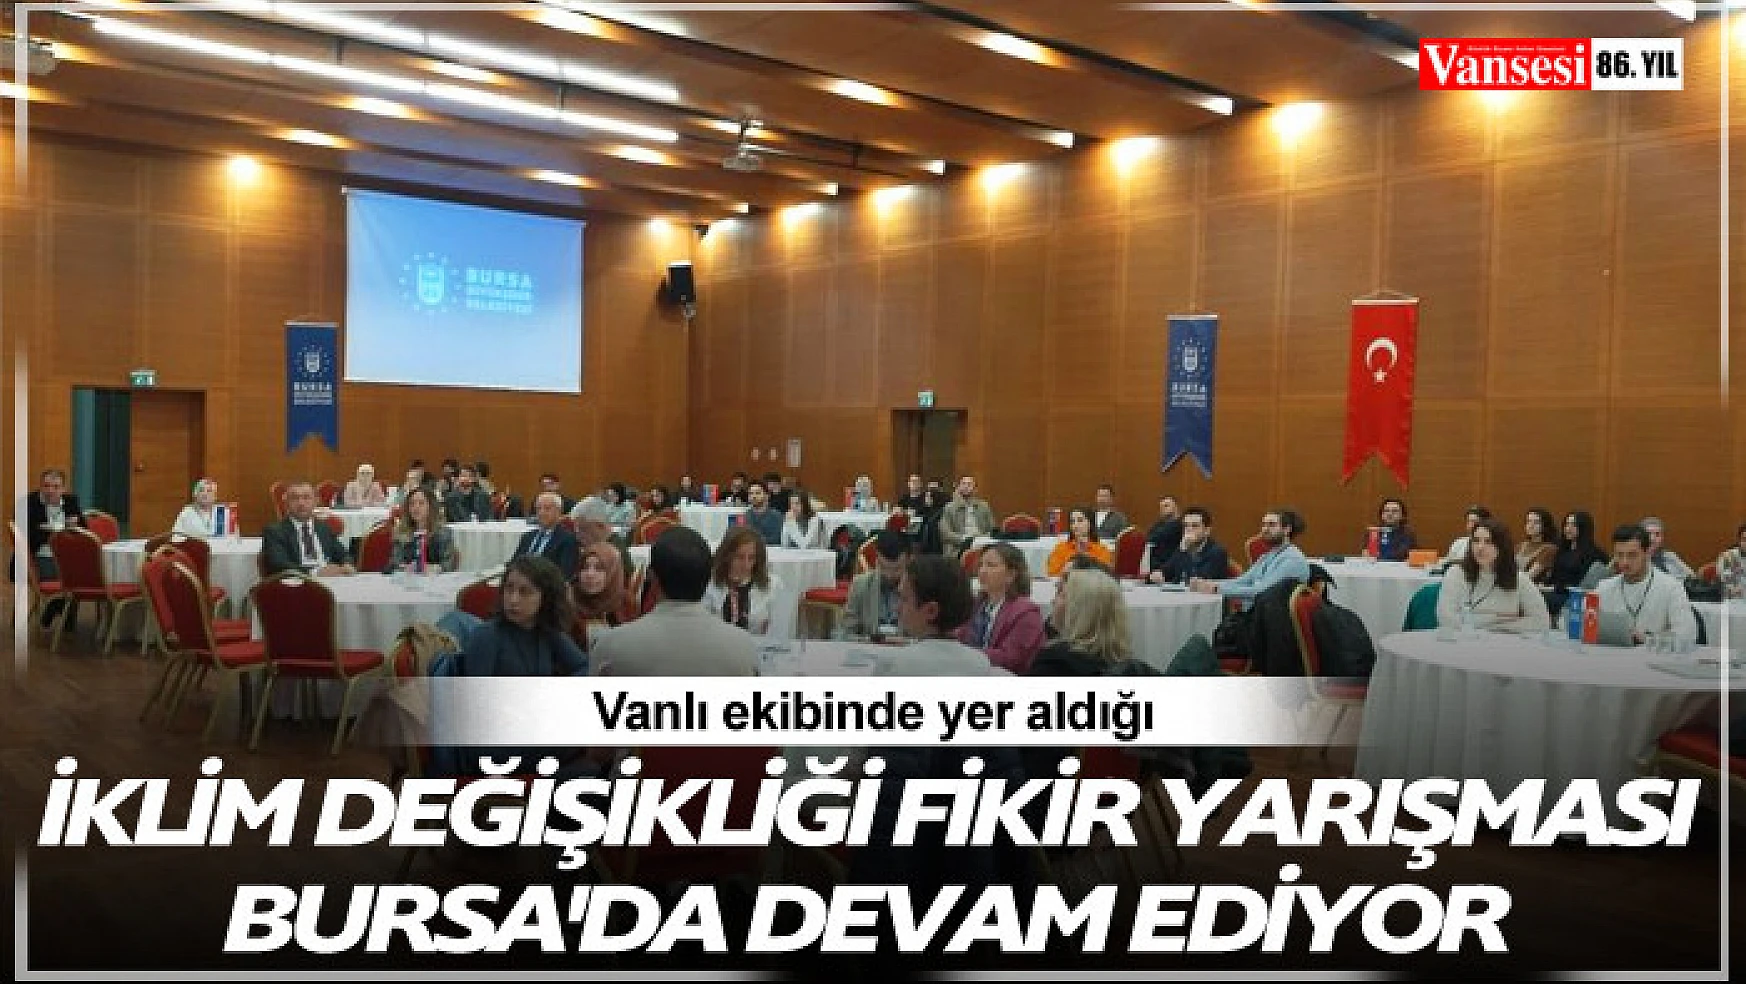 Bursa'da kuraklığa karşı yeni fikirler filizleniyor